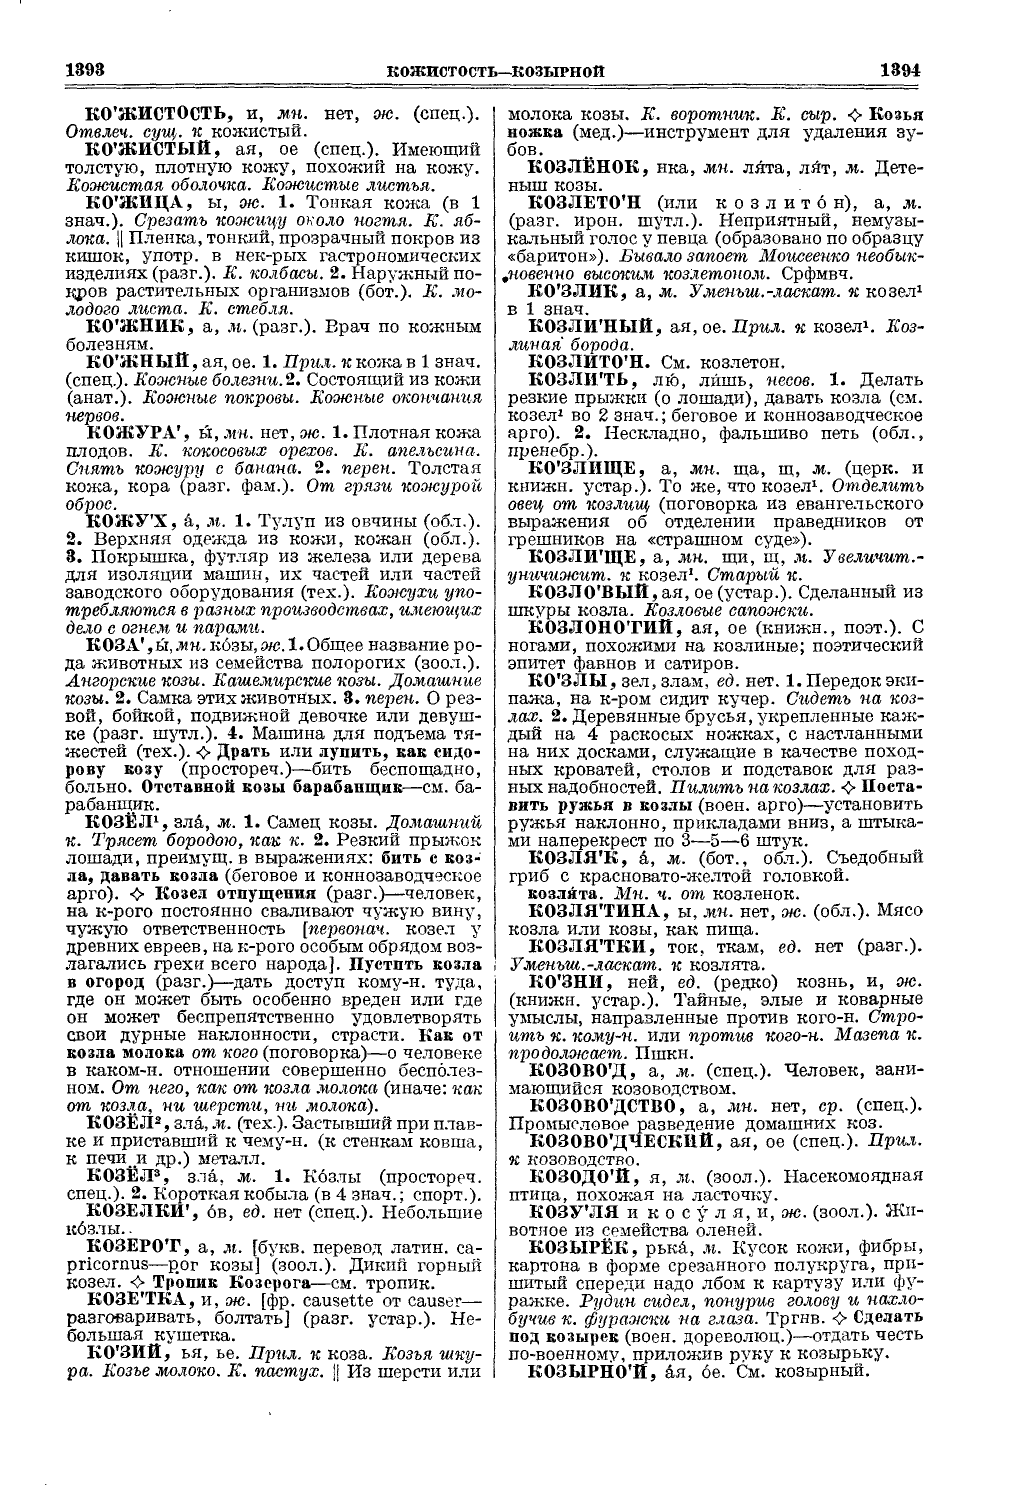 Фотокопия pdf / скан страницы 735 толкового словаря Ушакова (том 1)